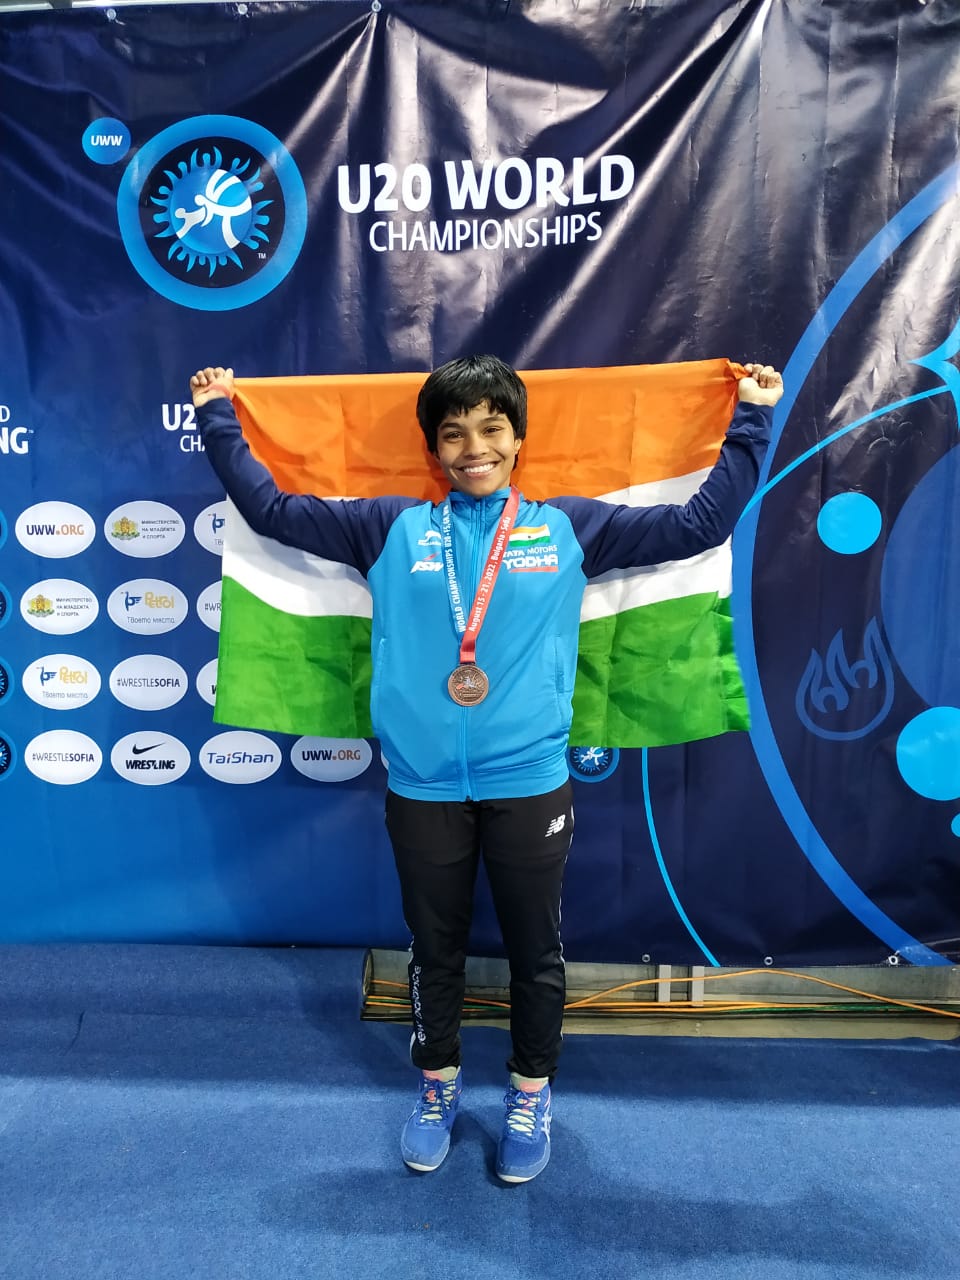 विश्व कुश्ती चैंपियनशिप में प्रियांशी ने जीता कांस्य